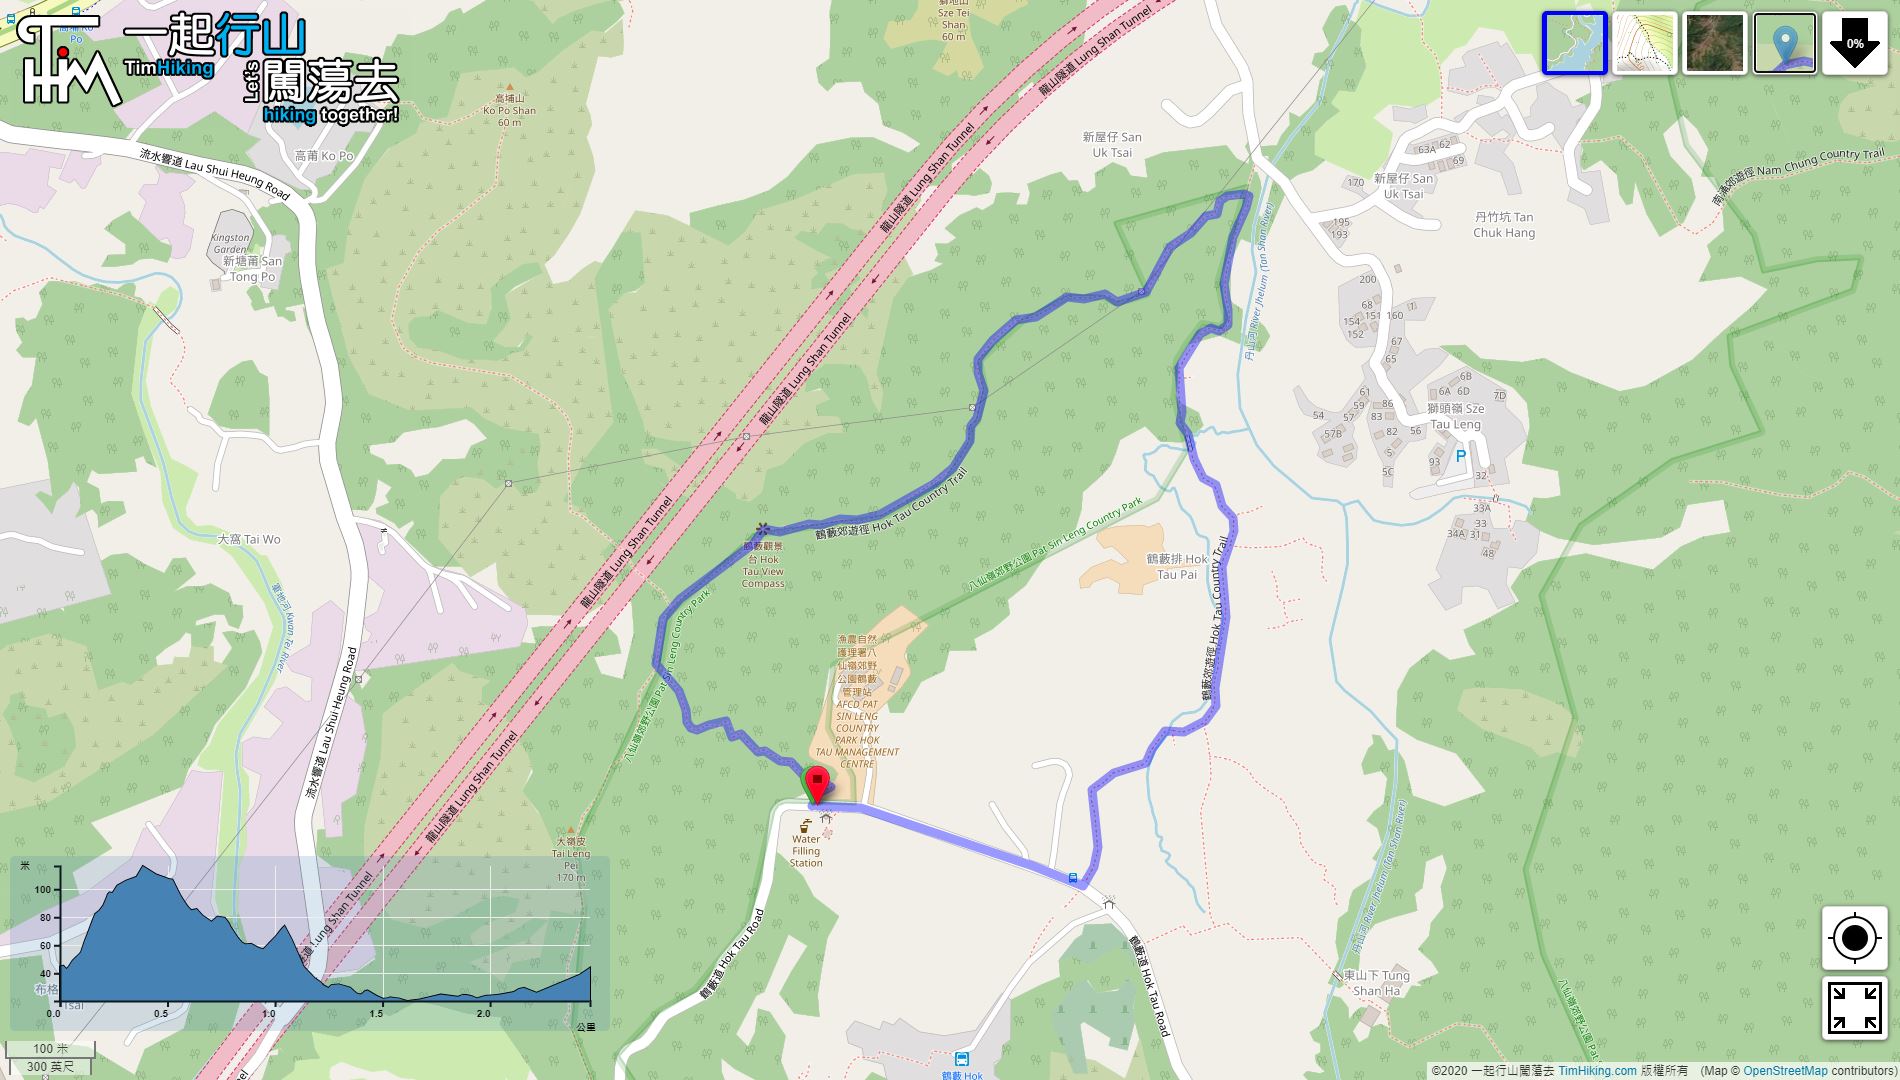 「Hok Tau Country Trail」路線Map